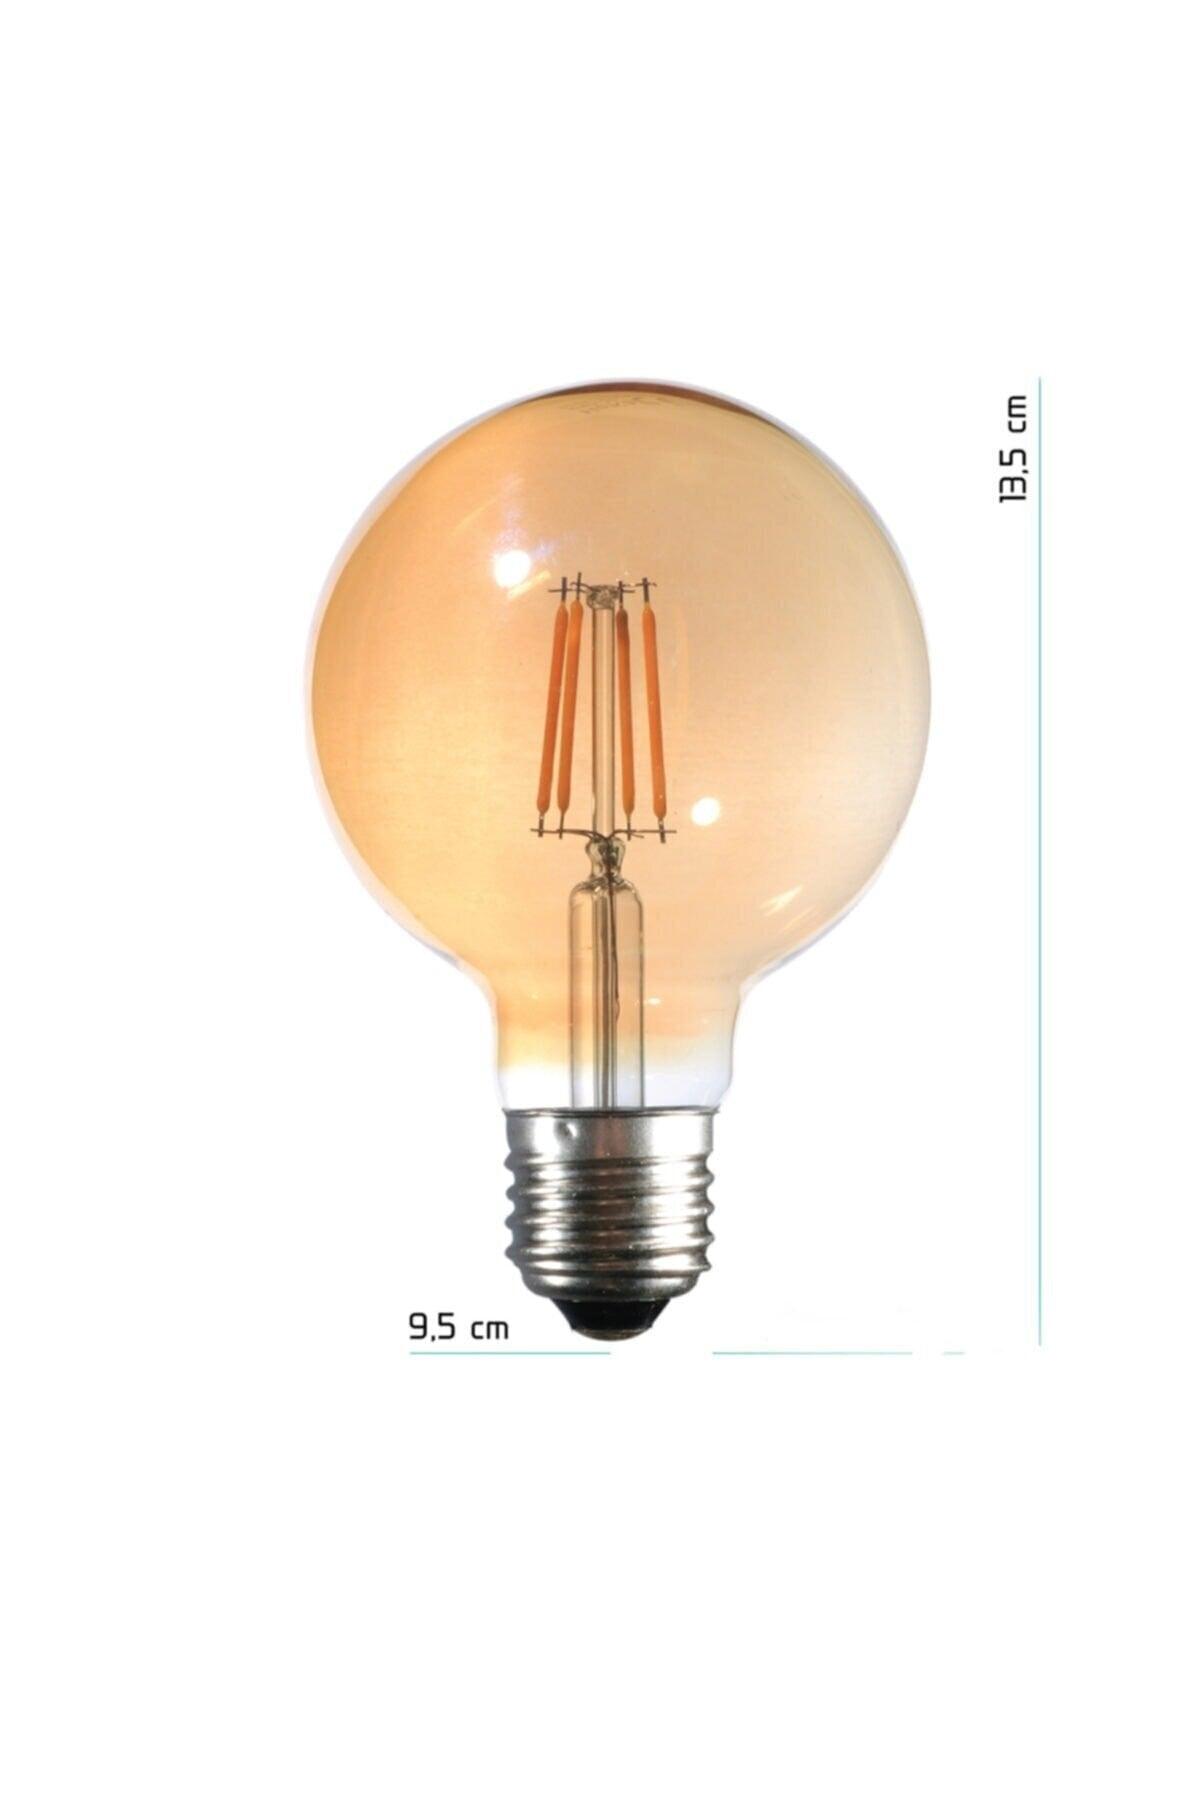 10 Led Bulb 4w 2500k E27 (daylight)